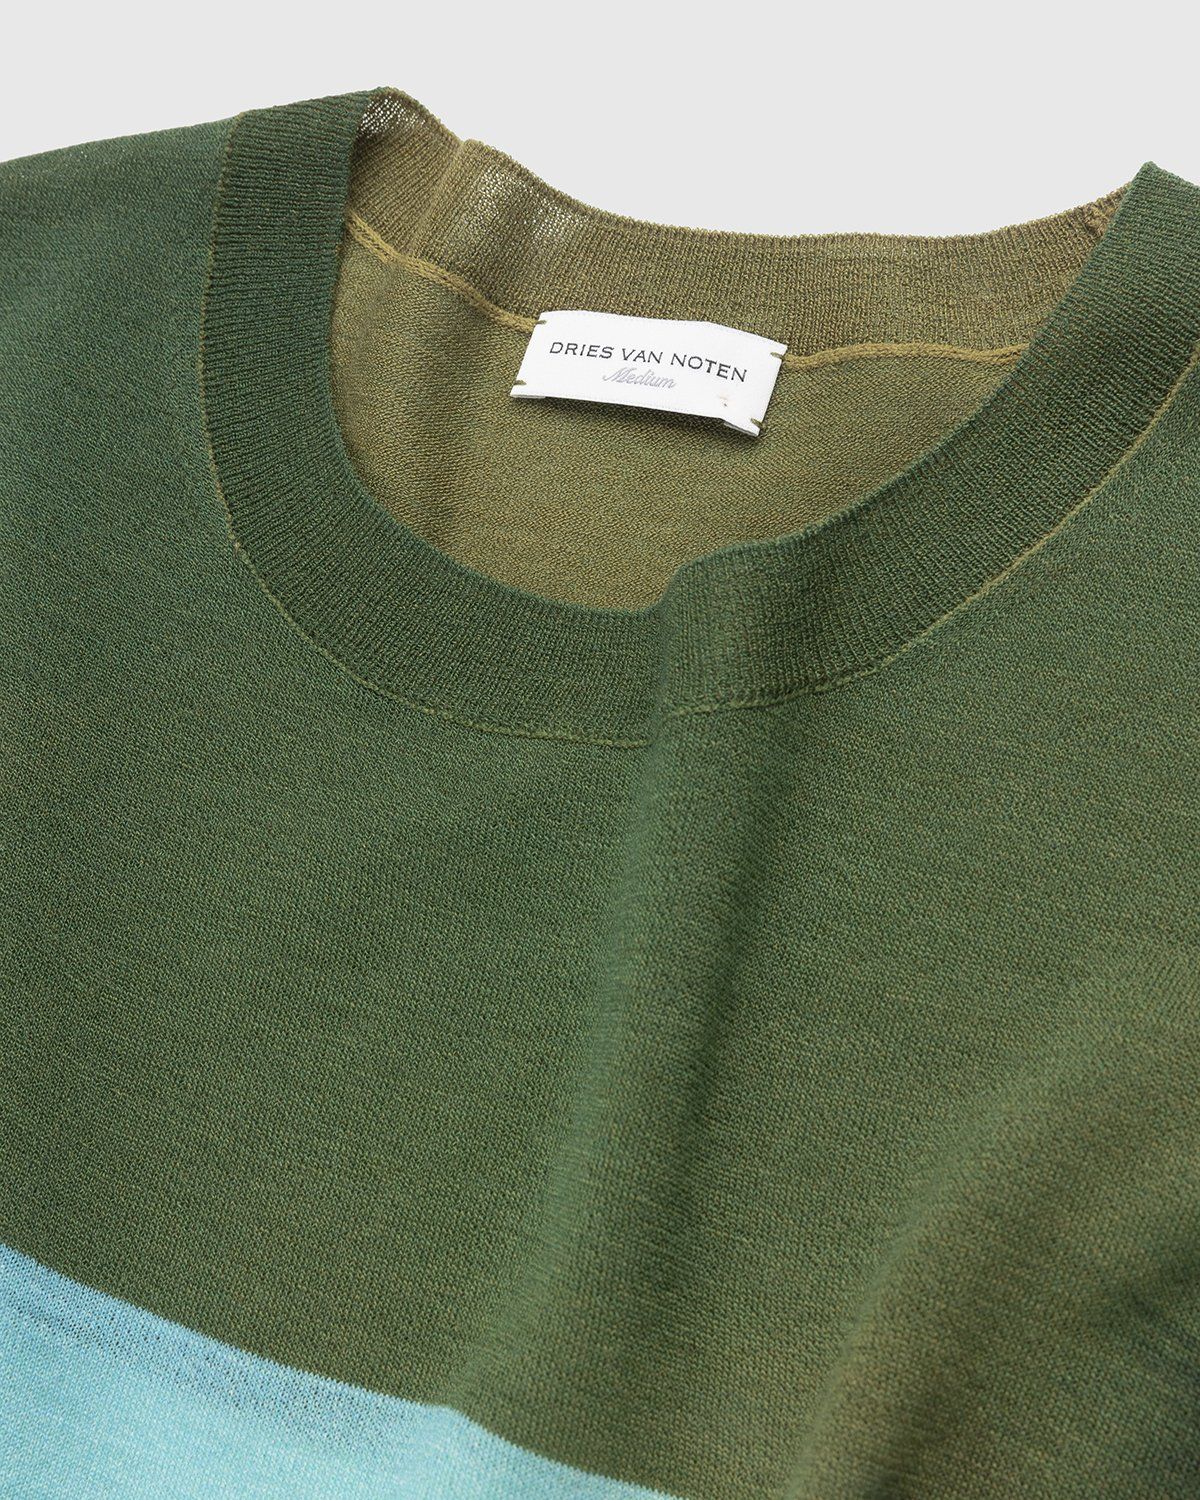 Dries van Noten – Jendrik Merino Sweater Dessin - Knitwear - Multi - Image 3